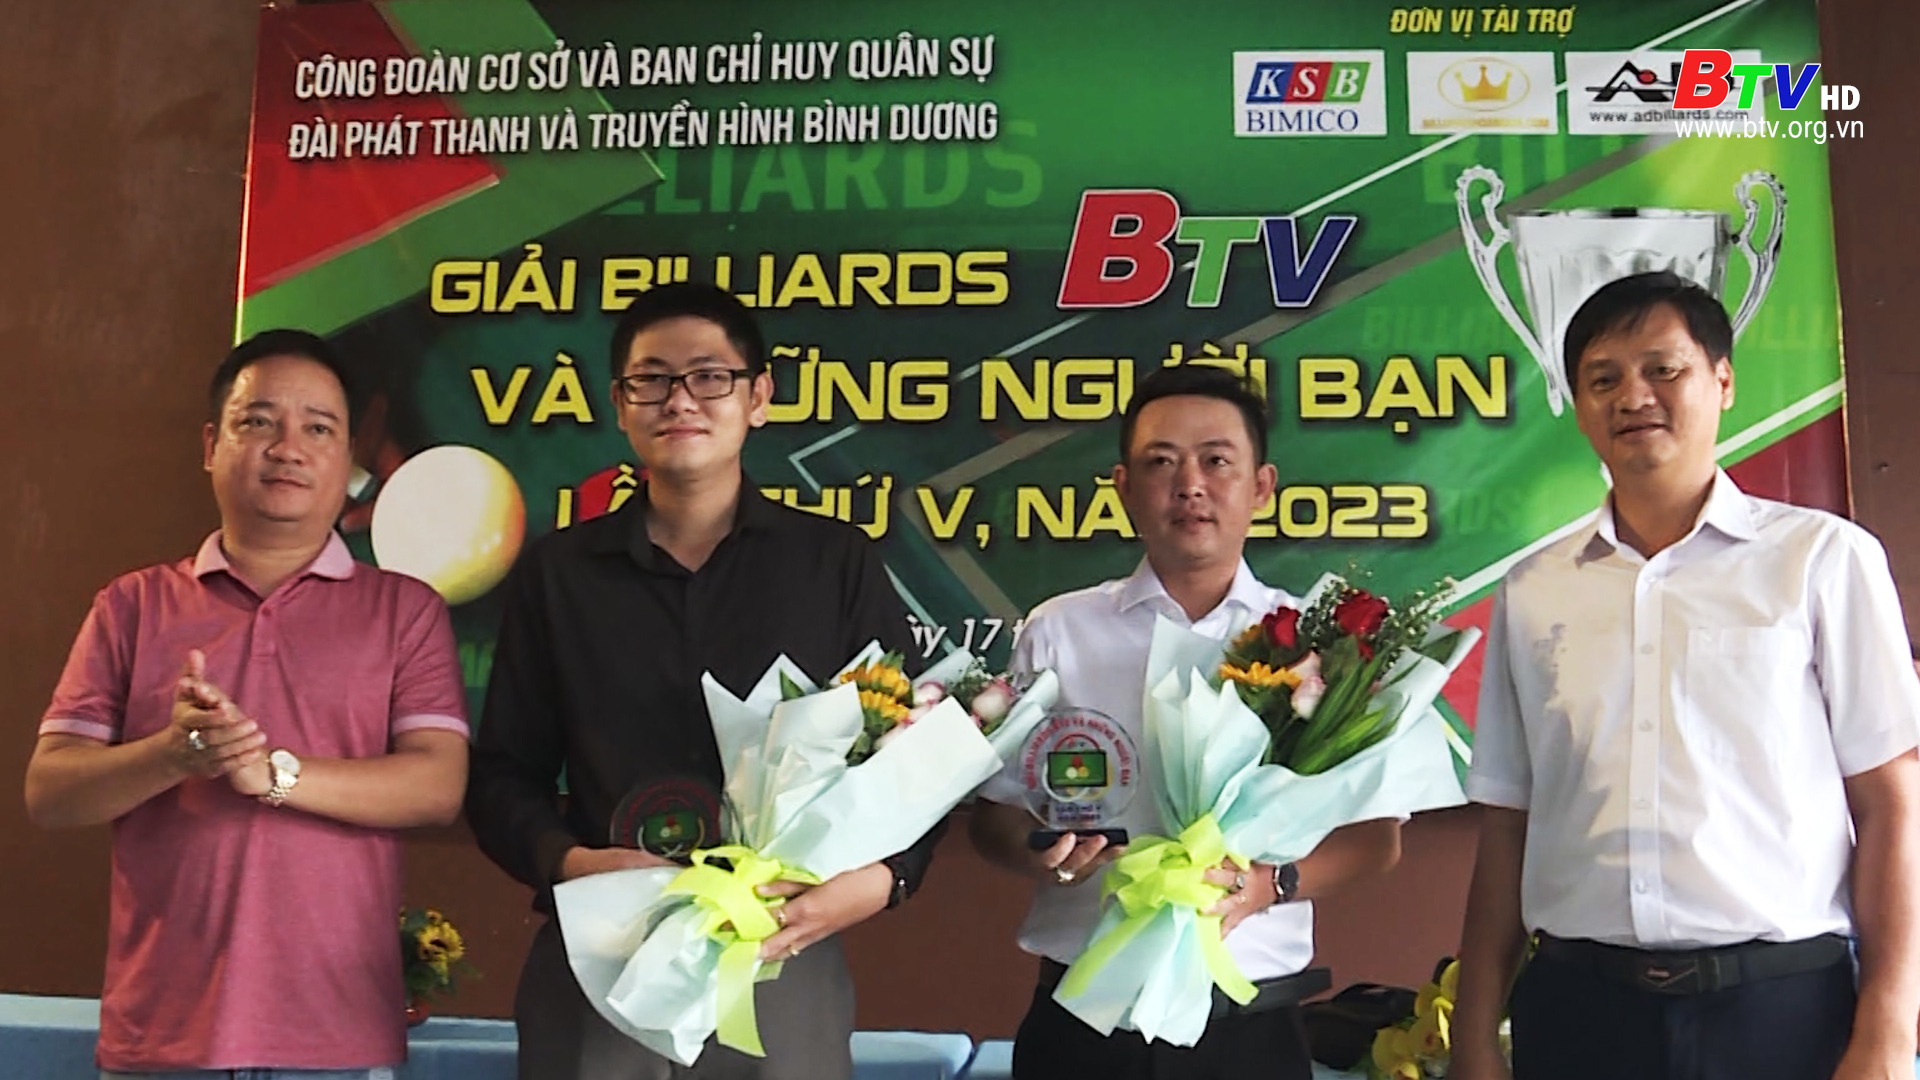 BTV tổ chức giải Billiards nhân ngày Báo chí cách mạng Việt Nam 21/6